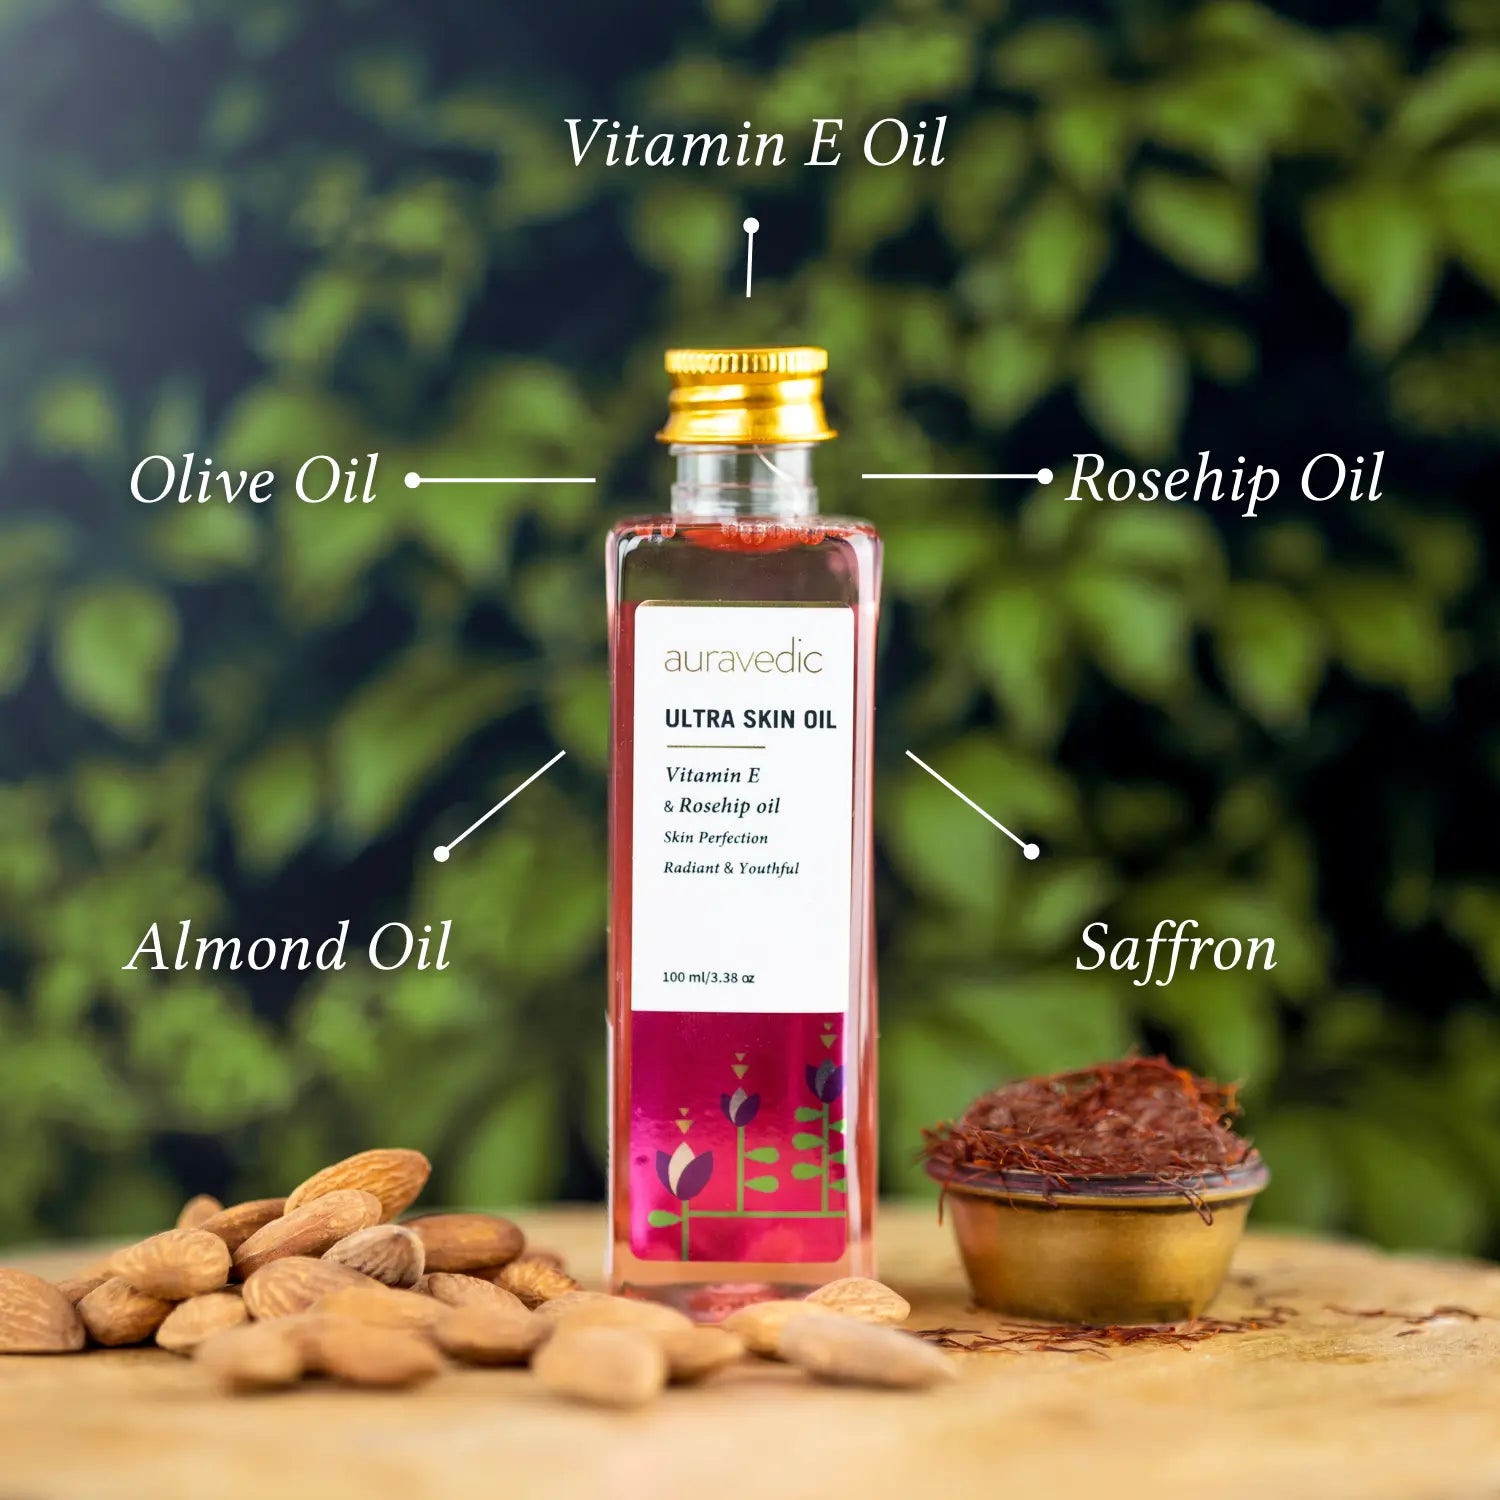 Ultra oil with vitamin E